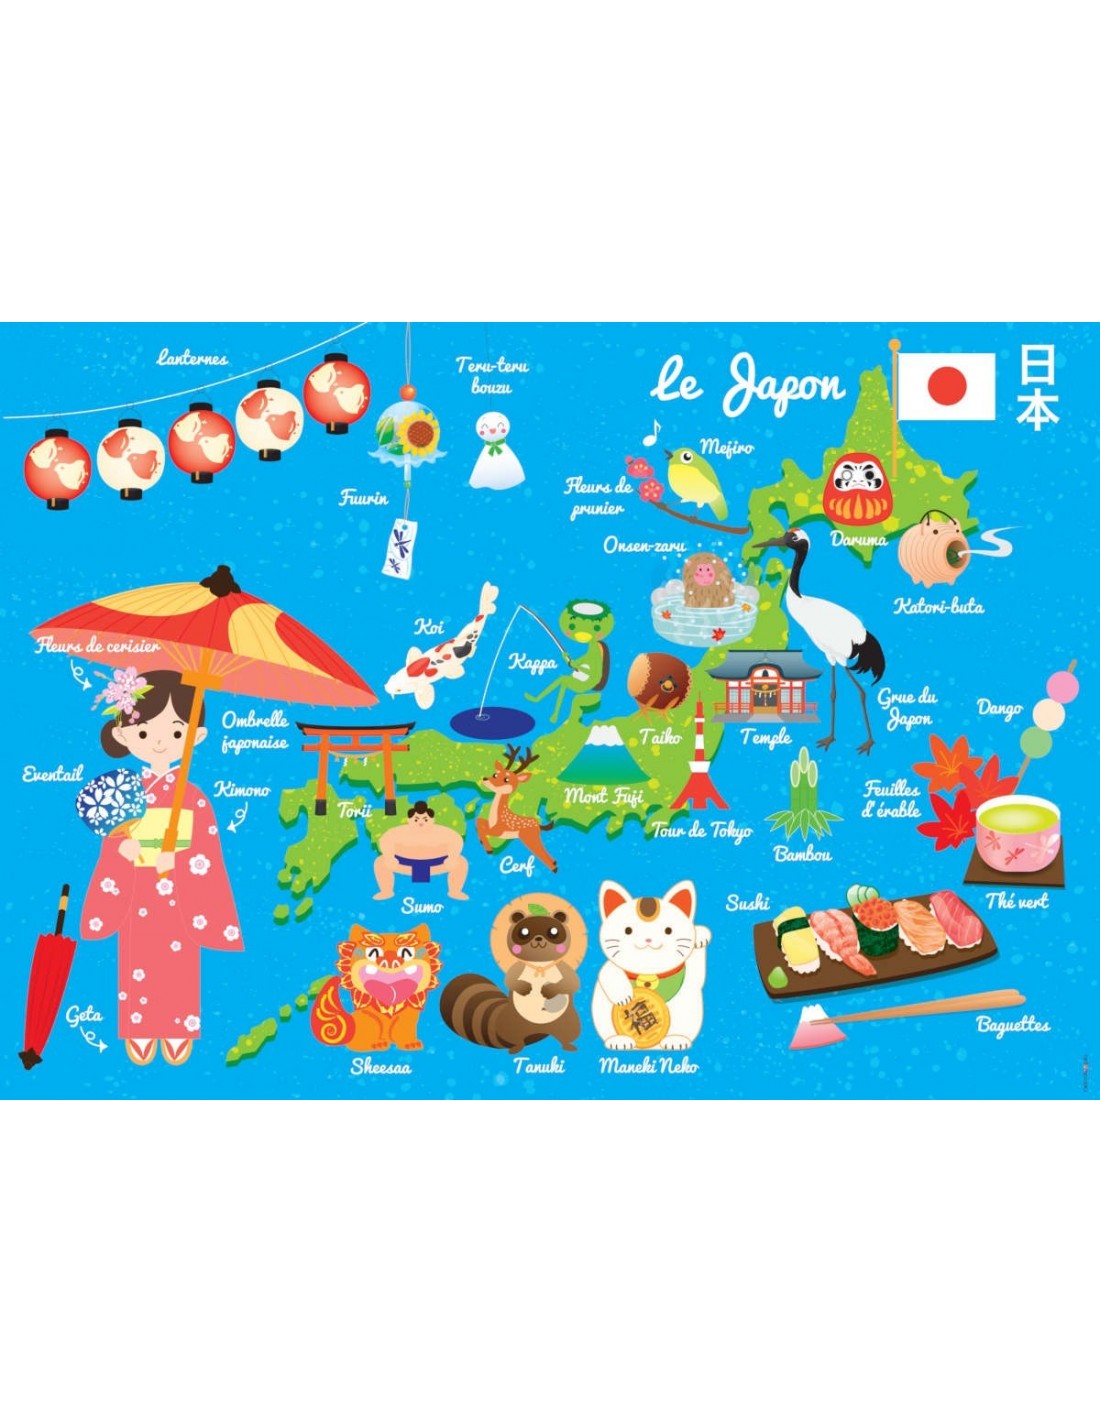 Carte du Japon  Carte japon, Japon, Carte